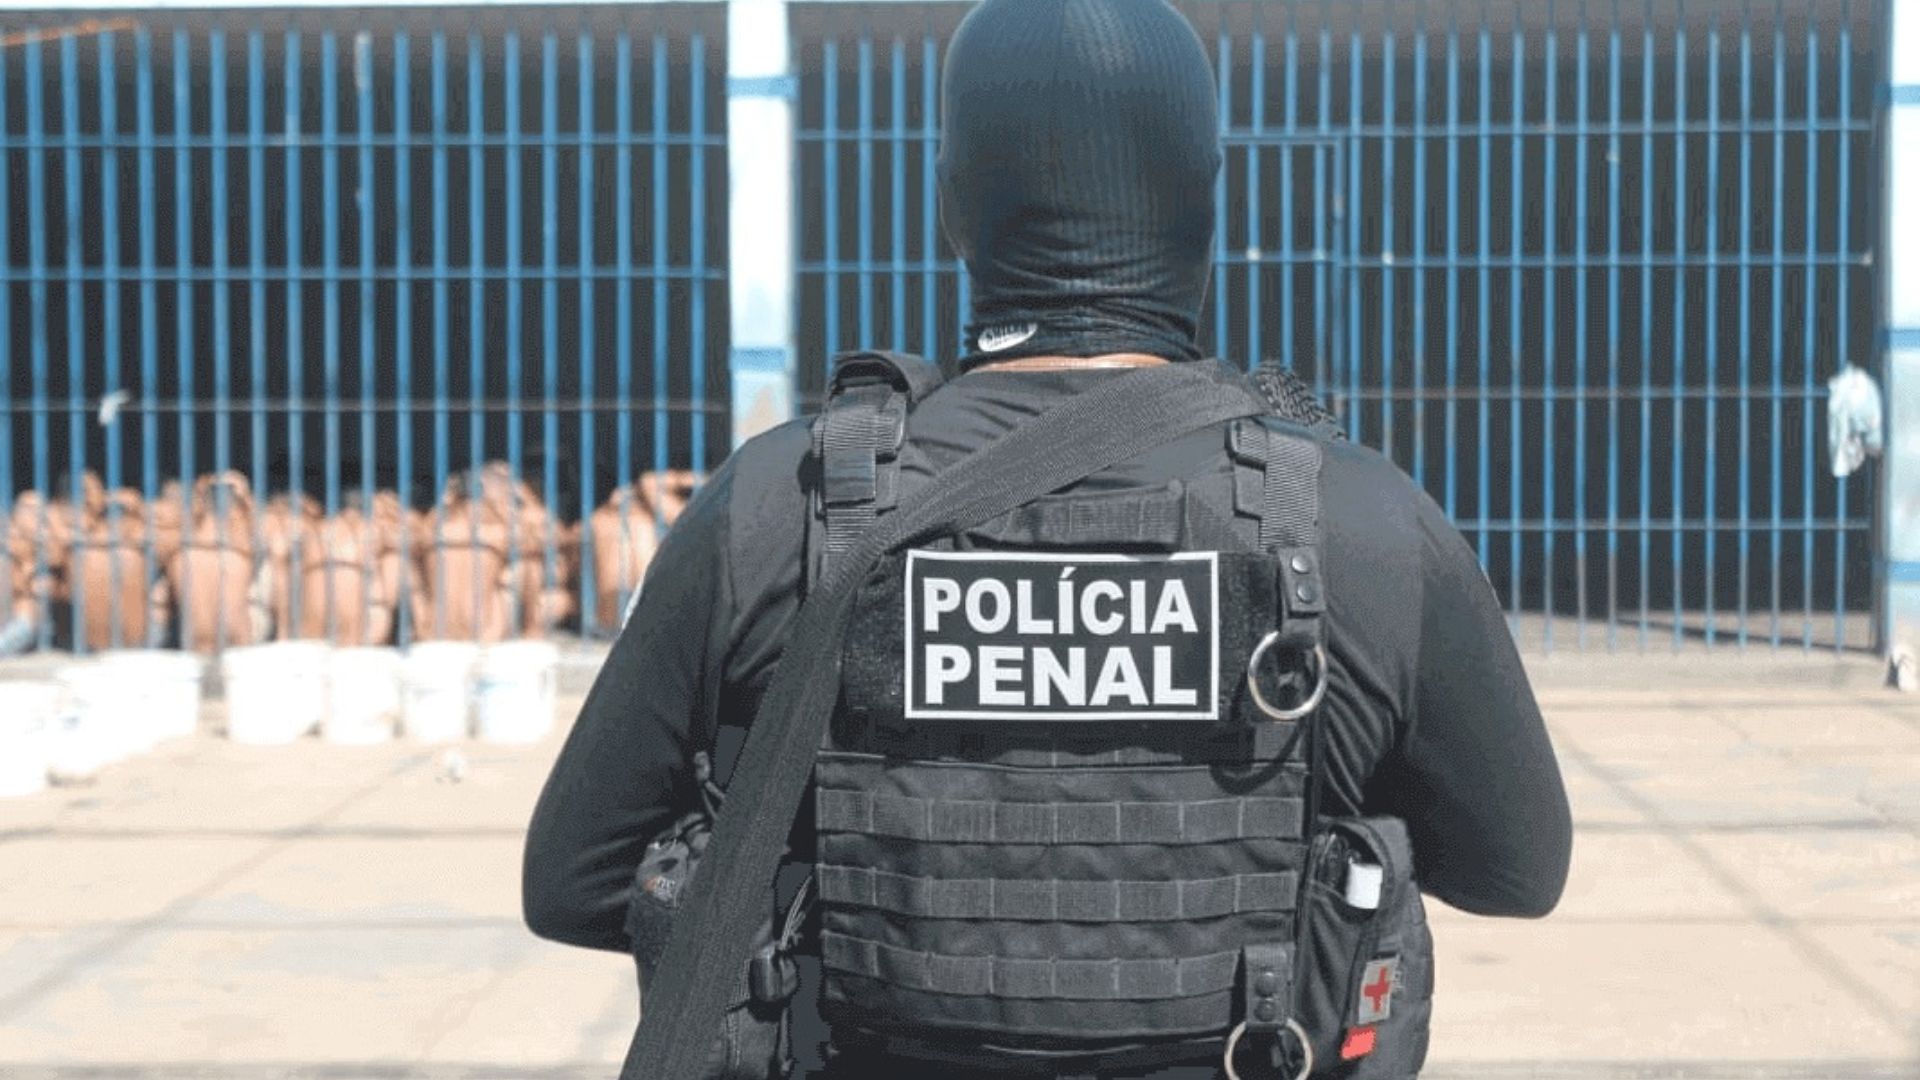 Análise de edital - Policia Penal do Espírito Santo 